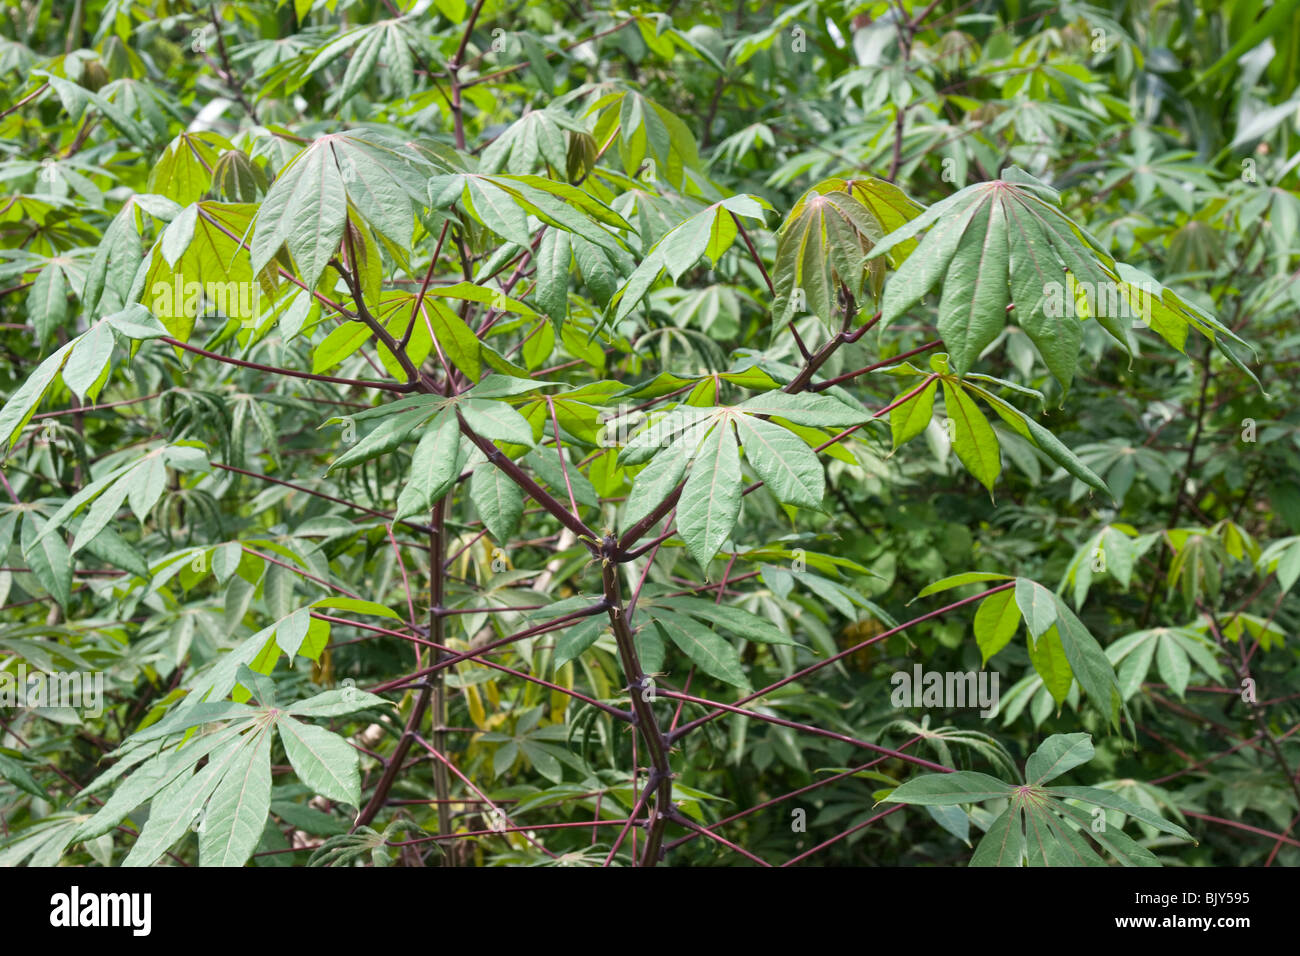 Cassava plant (Manihot esculenta). Republic of Panama, Central America Stock Photo